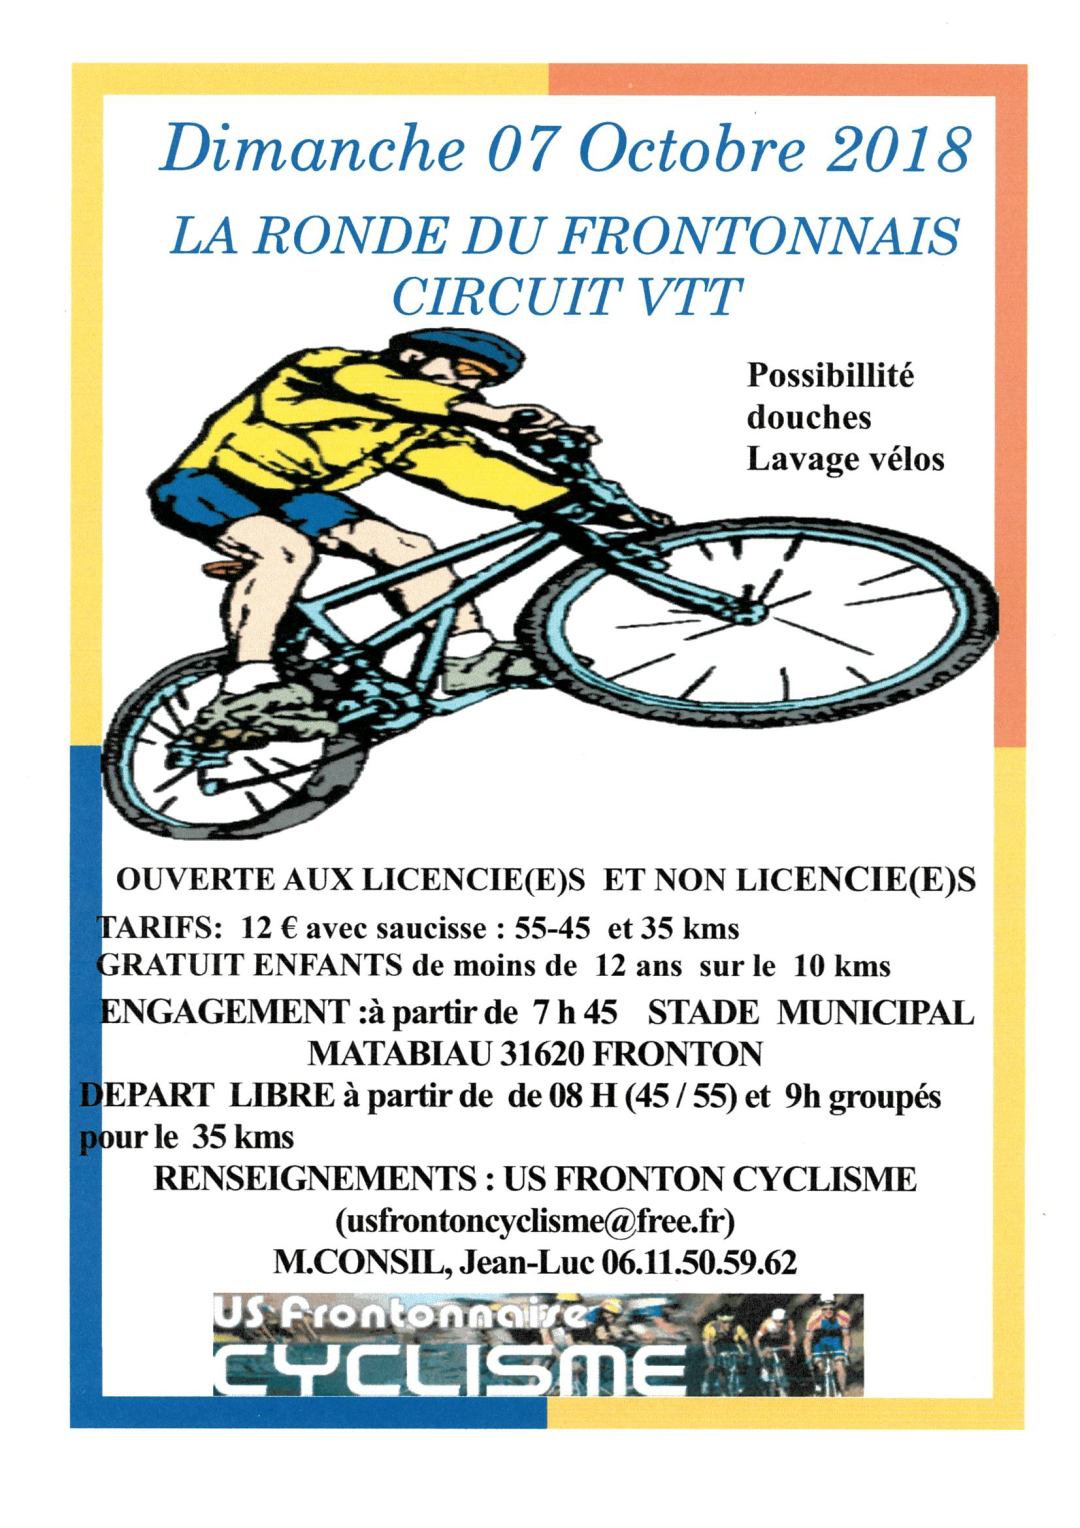 1007218 La Ronde du Frontonnais Circuit VTT